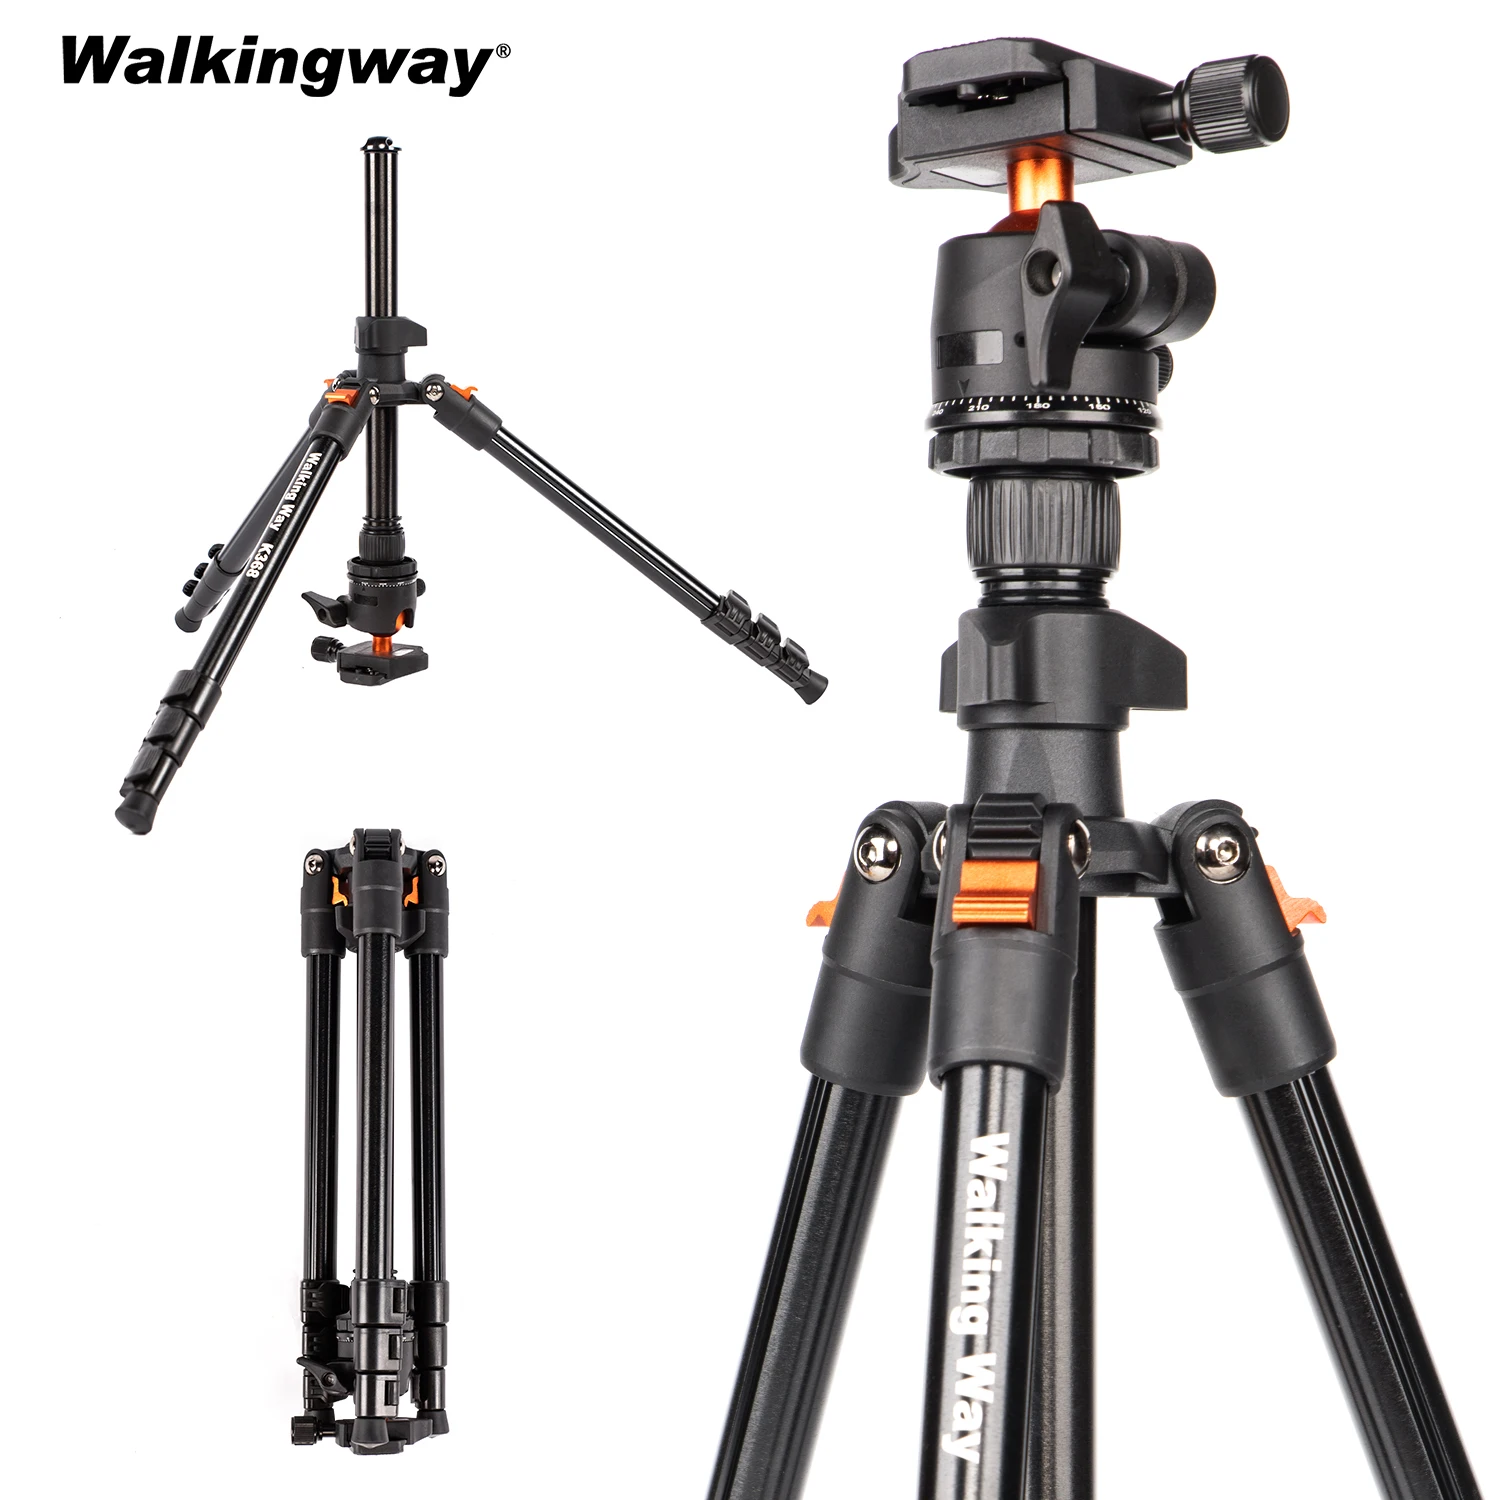 

Профессиональный высокий штатив WalkingWay для камеры 62,99 дюйма для DSLR, портативный алюминиевый дорожный штатив с панорамной шаровой головкой на 360 градусов